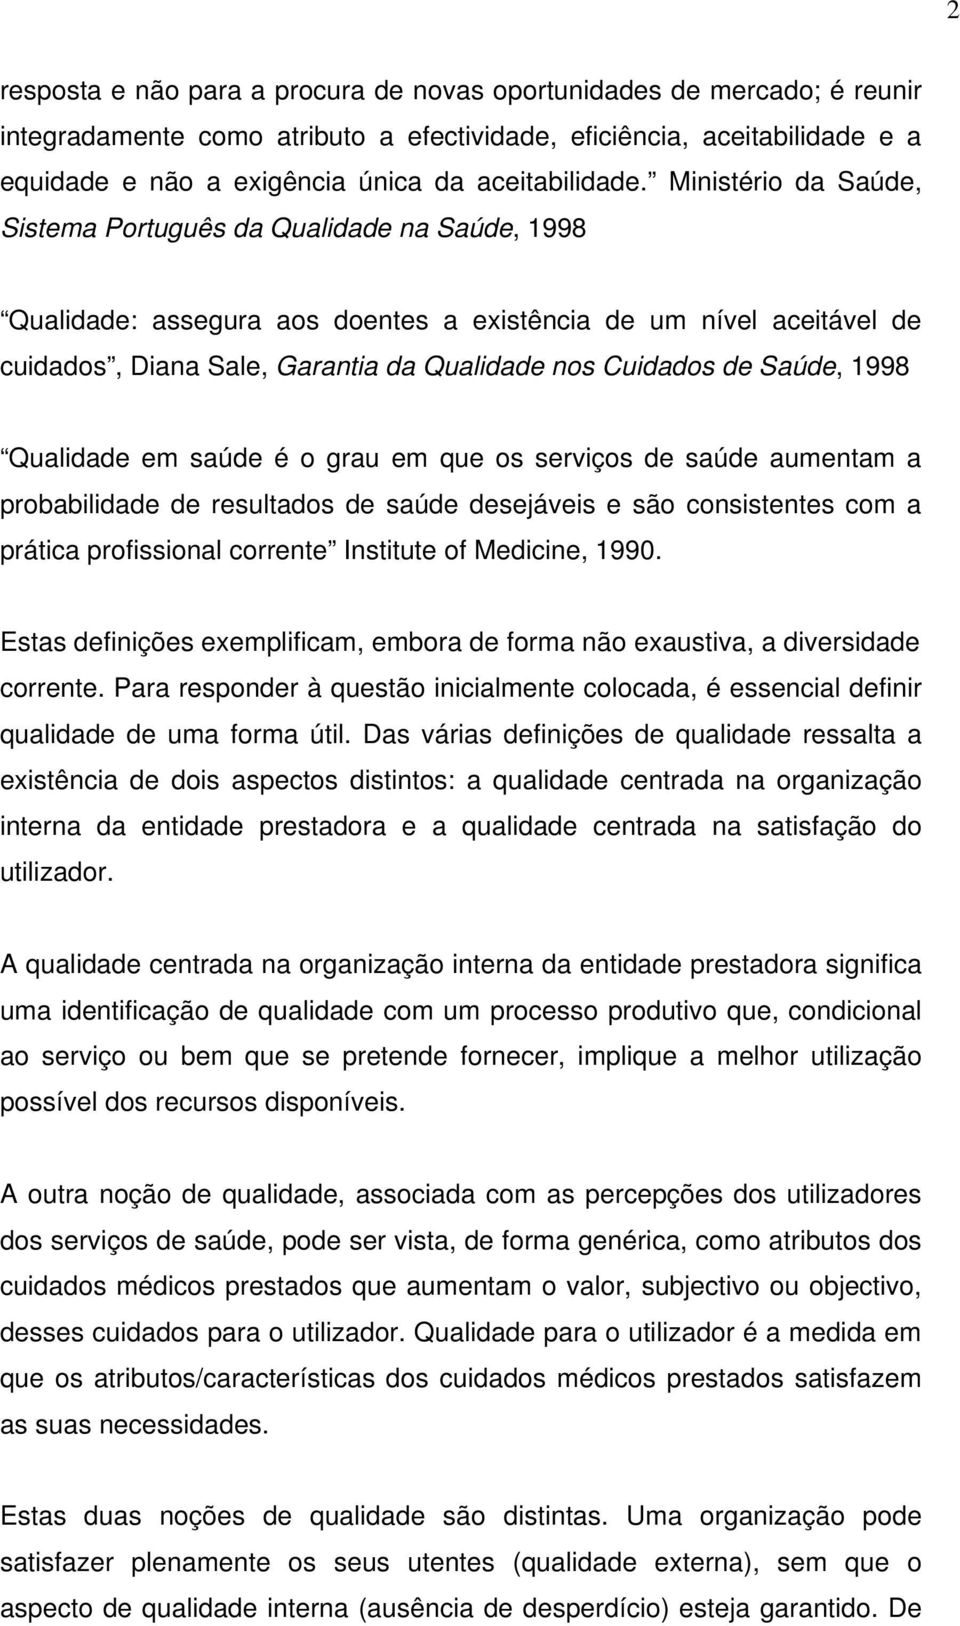 Ministério da Saúde, Sistema Português da Qualidade na Saúde, 1998 Qualidade: assegura aos doentes a existência de um nível aceitável de cuidados, Diana Sale, Garantia da Qualidade nos Cuidados de